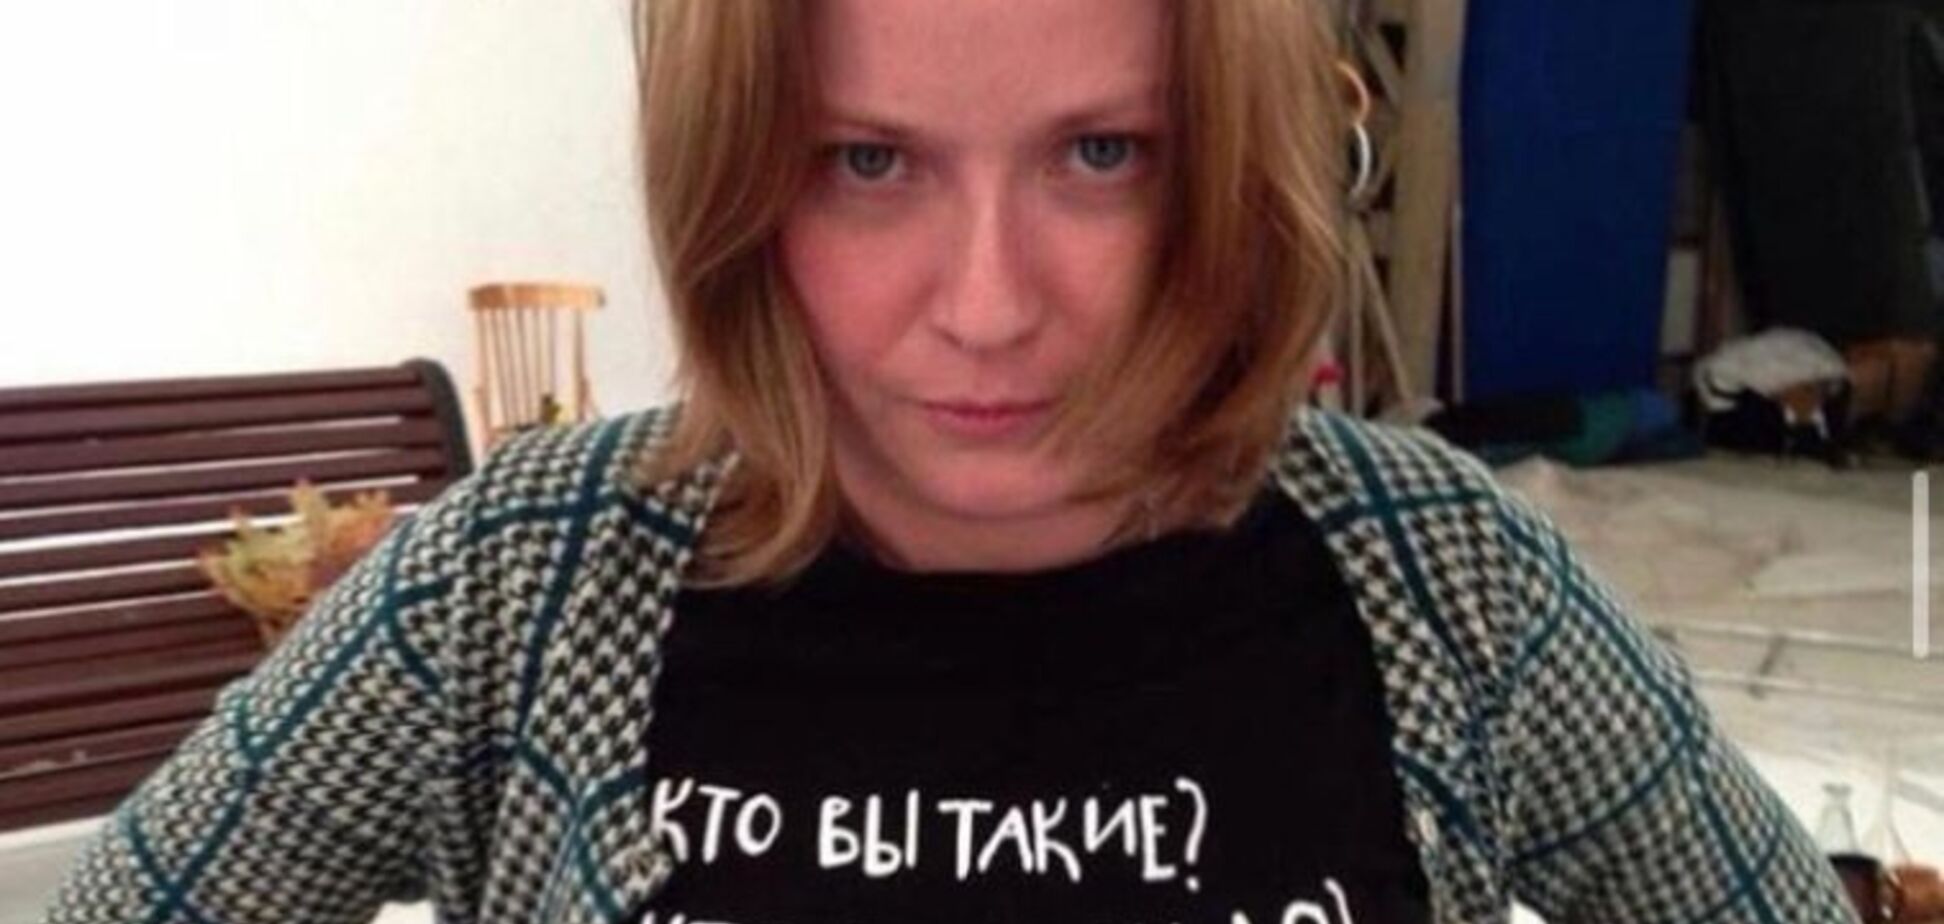 'Ідіть на...' У Росії спалахнув гучний скандал навколо нової міністерки культури. Фото